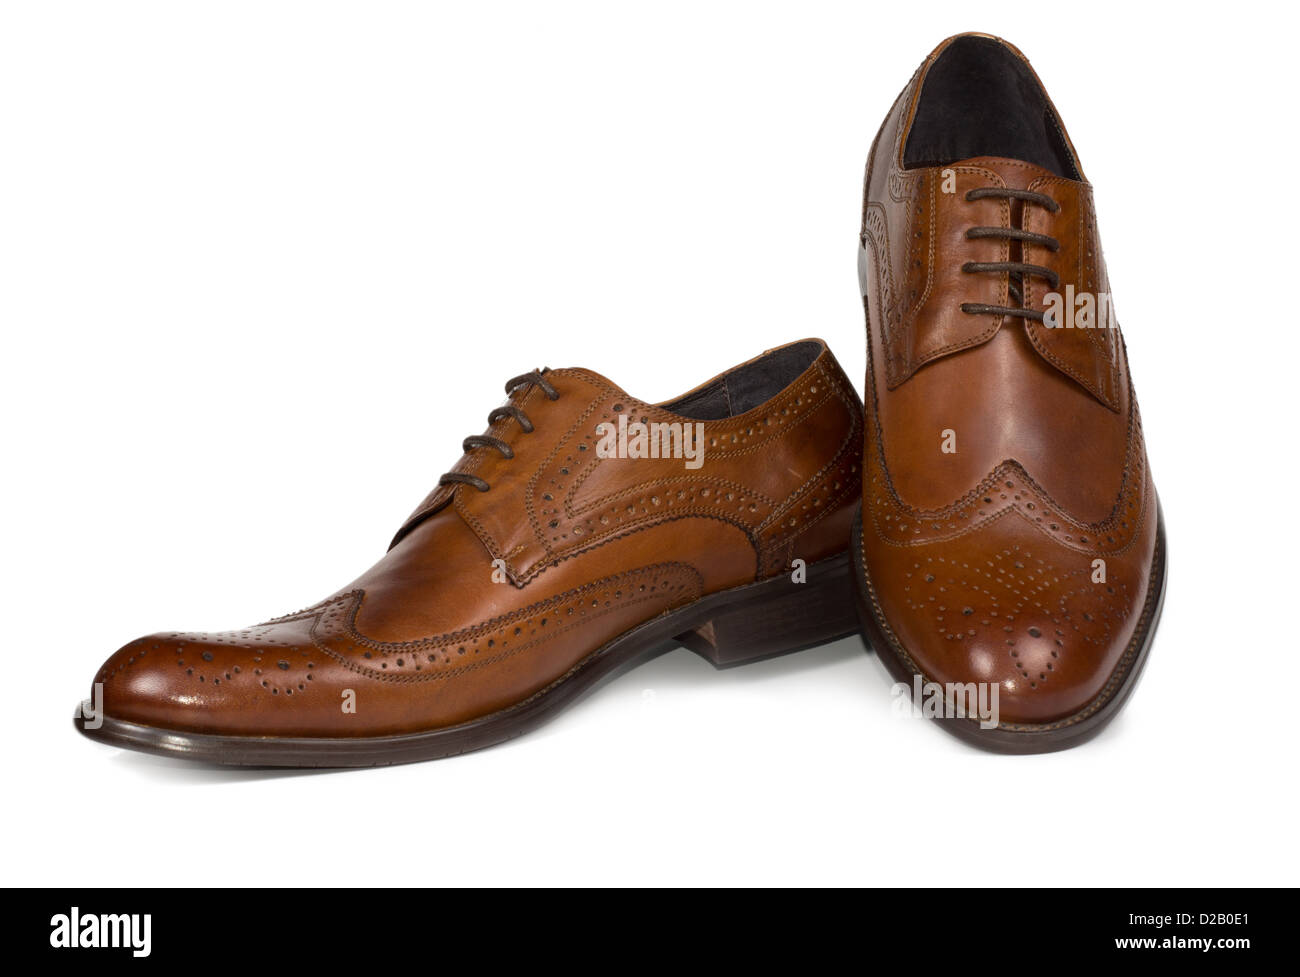 Élégante paire de lacets en cuir marron mens chaussures avec coutures élégantes pour des motifs d'usure formelle on white Banque D'Images